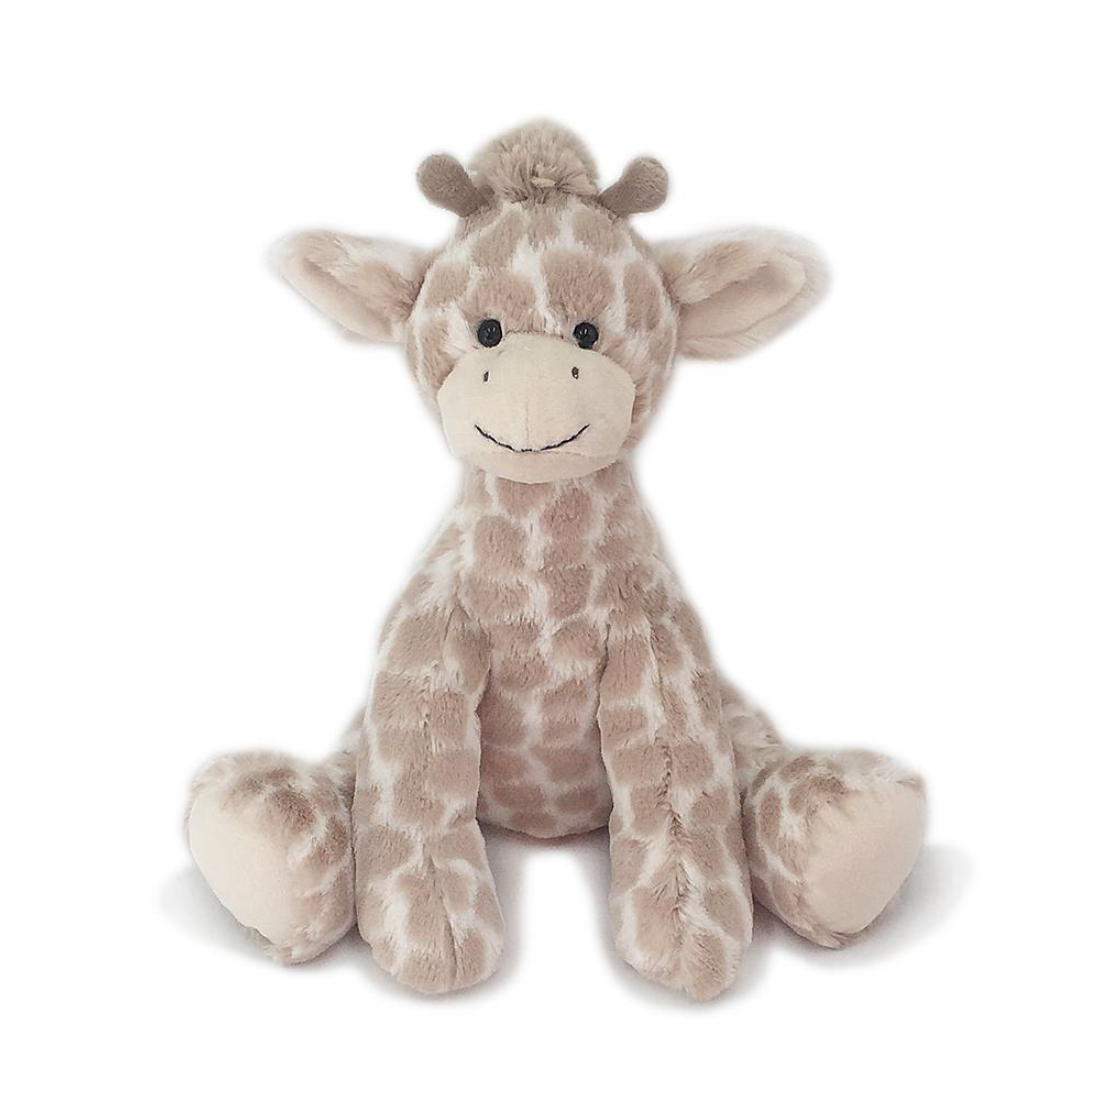 Gentry Giraffe Plush Toy - HoneyBug 